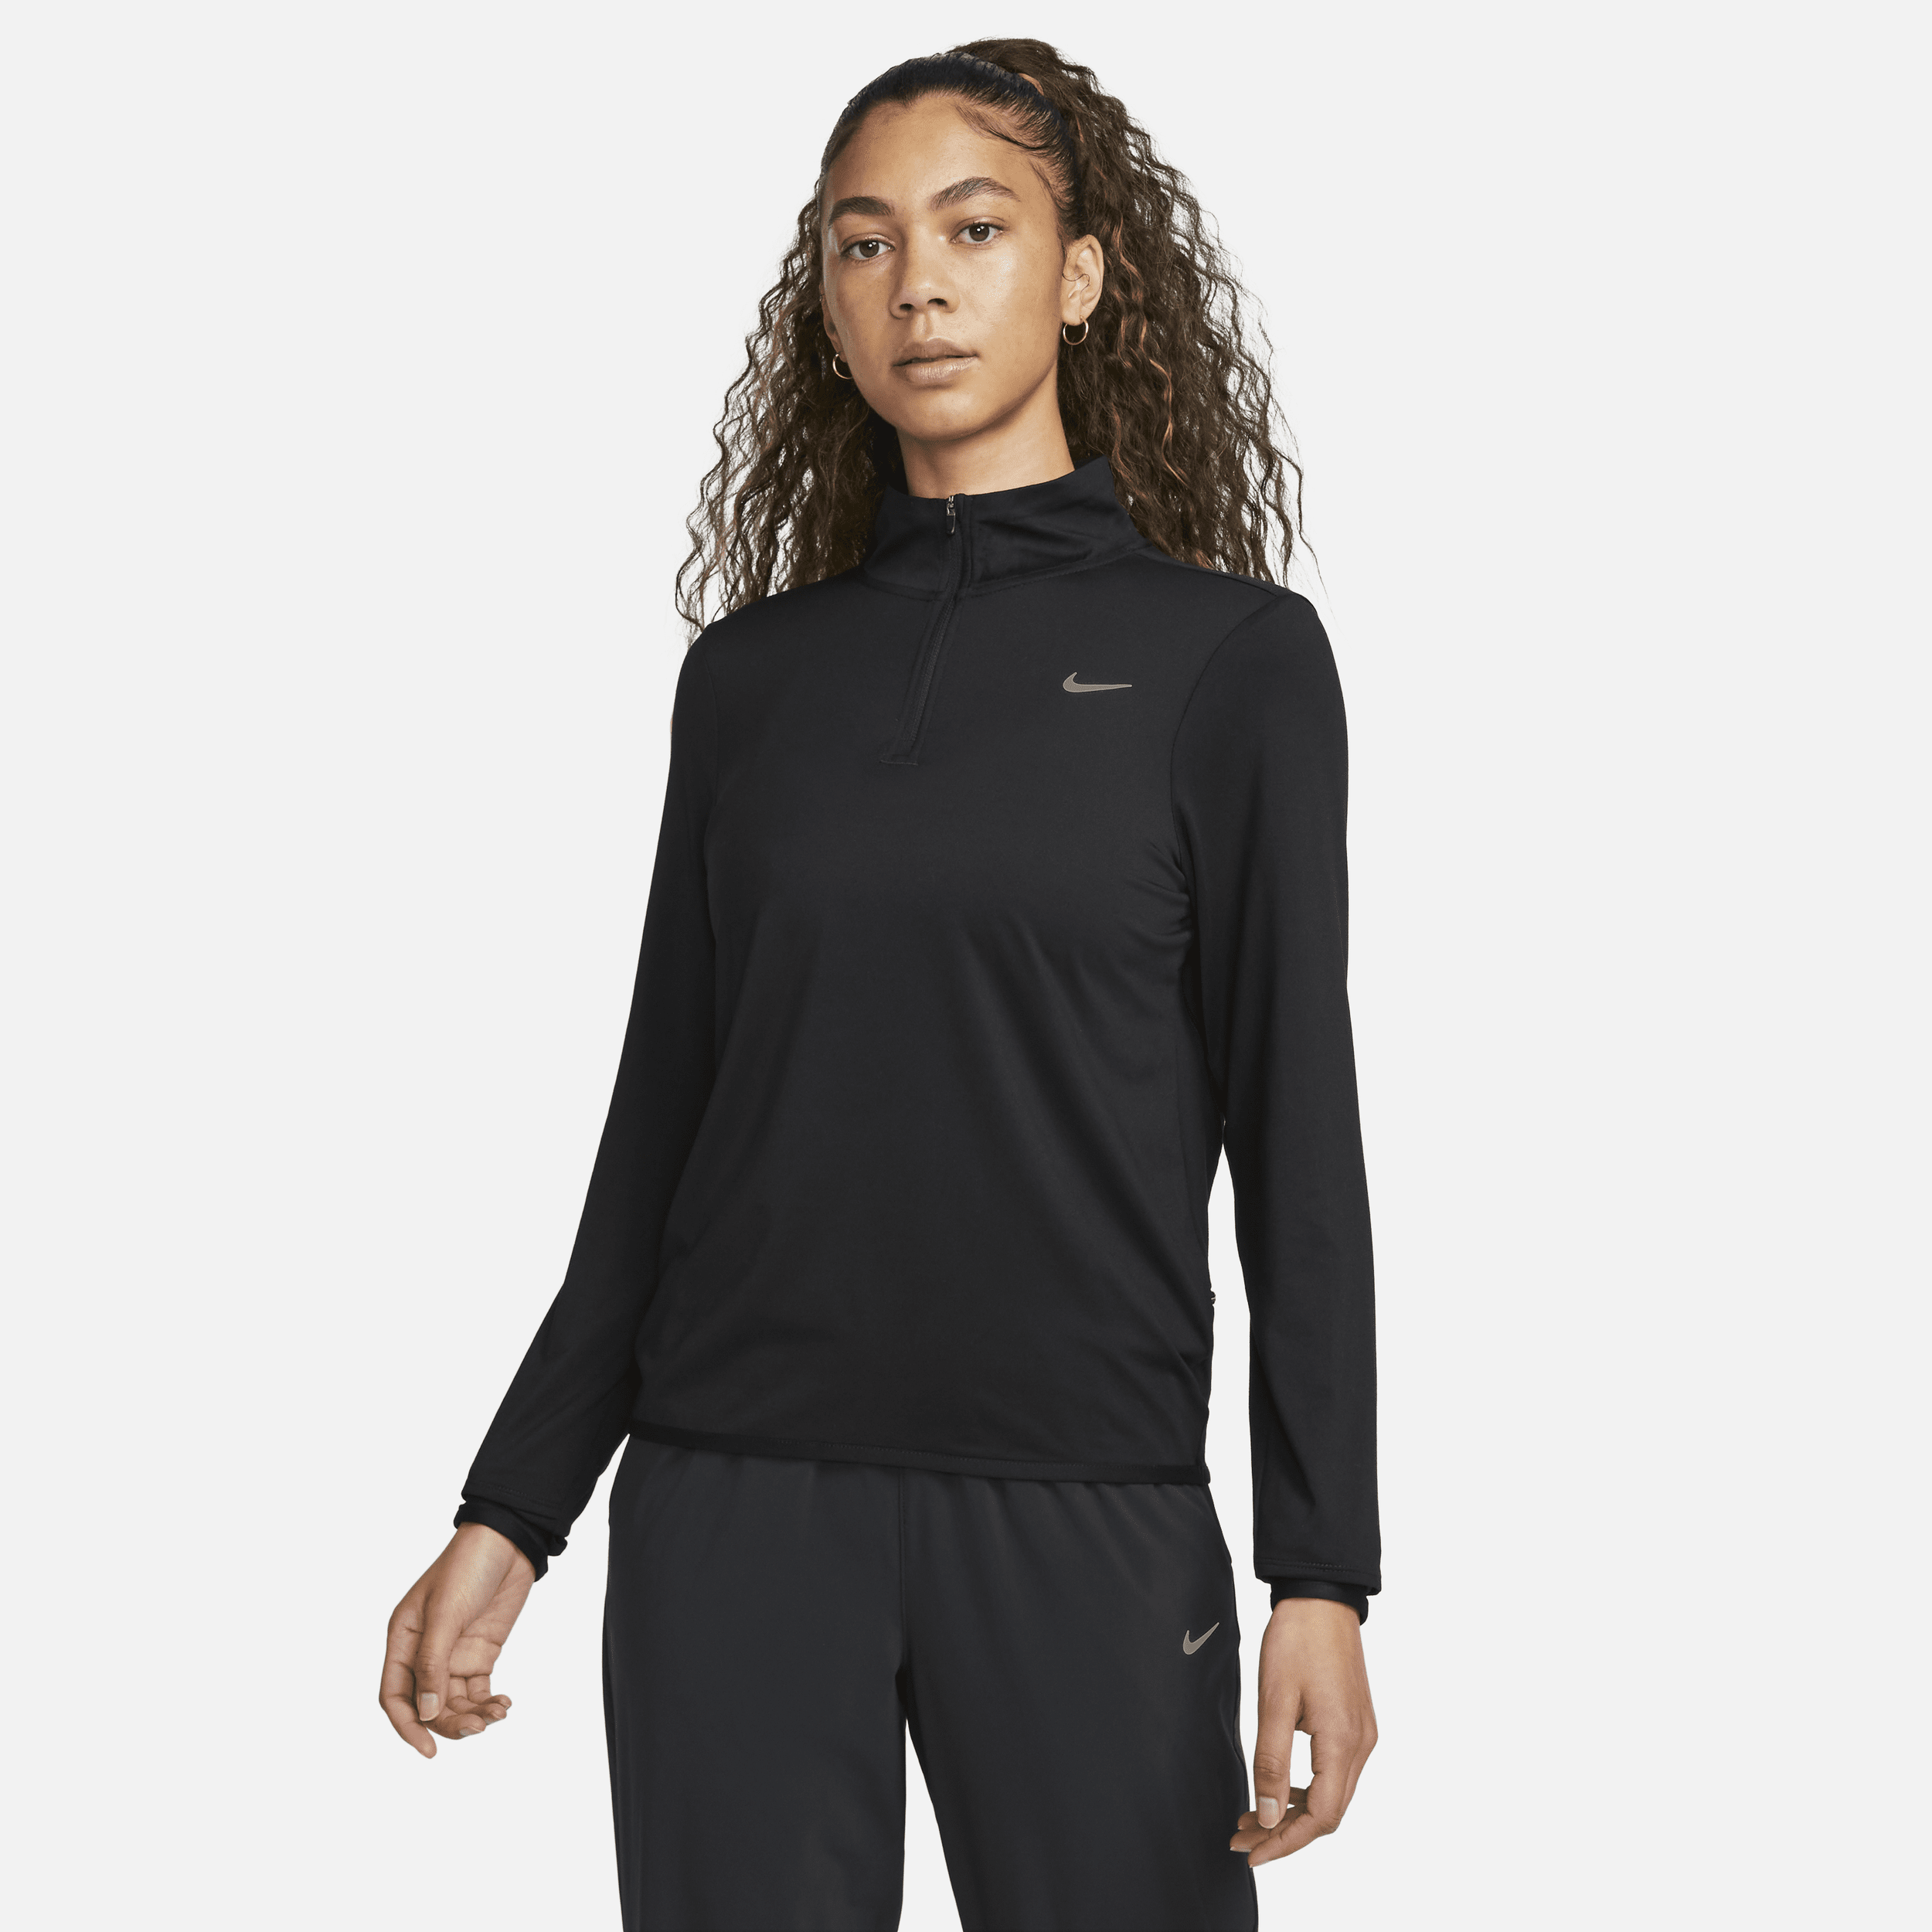 Nike Swift hardlooptop met korte rits en UV-bescherming voor dames - Zwart